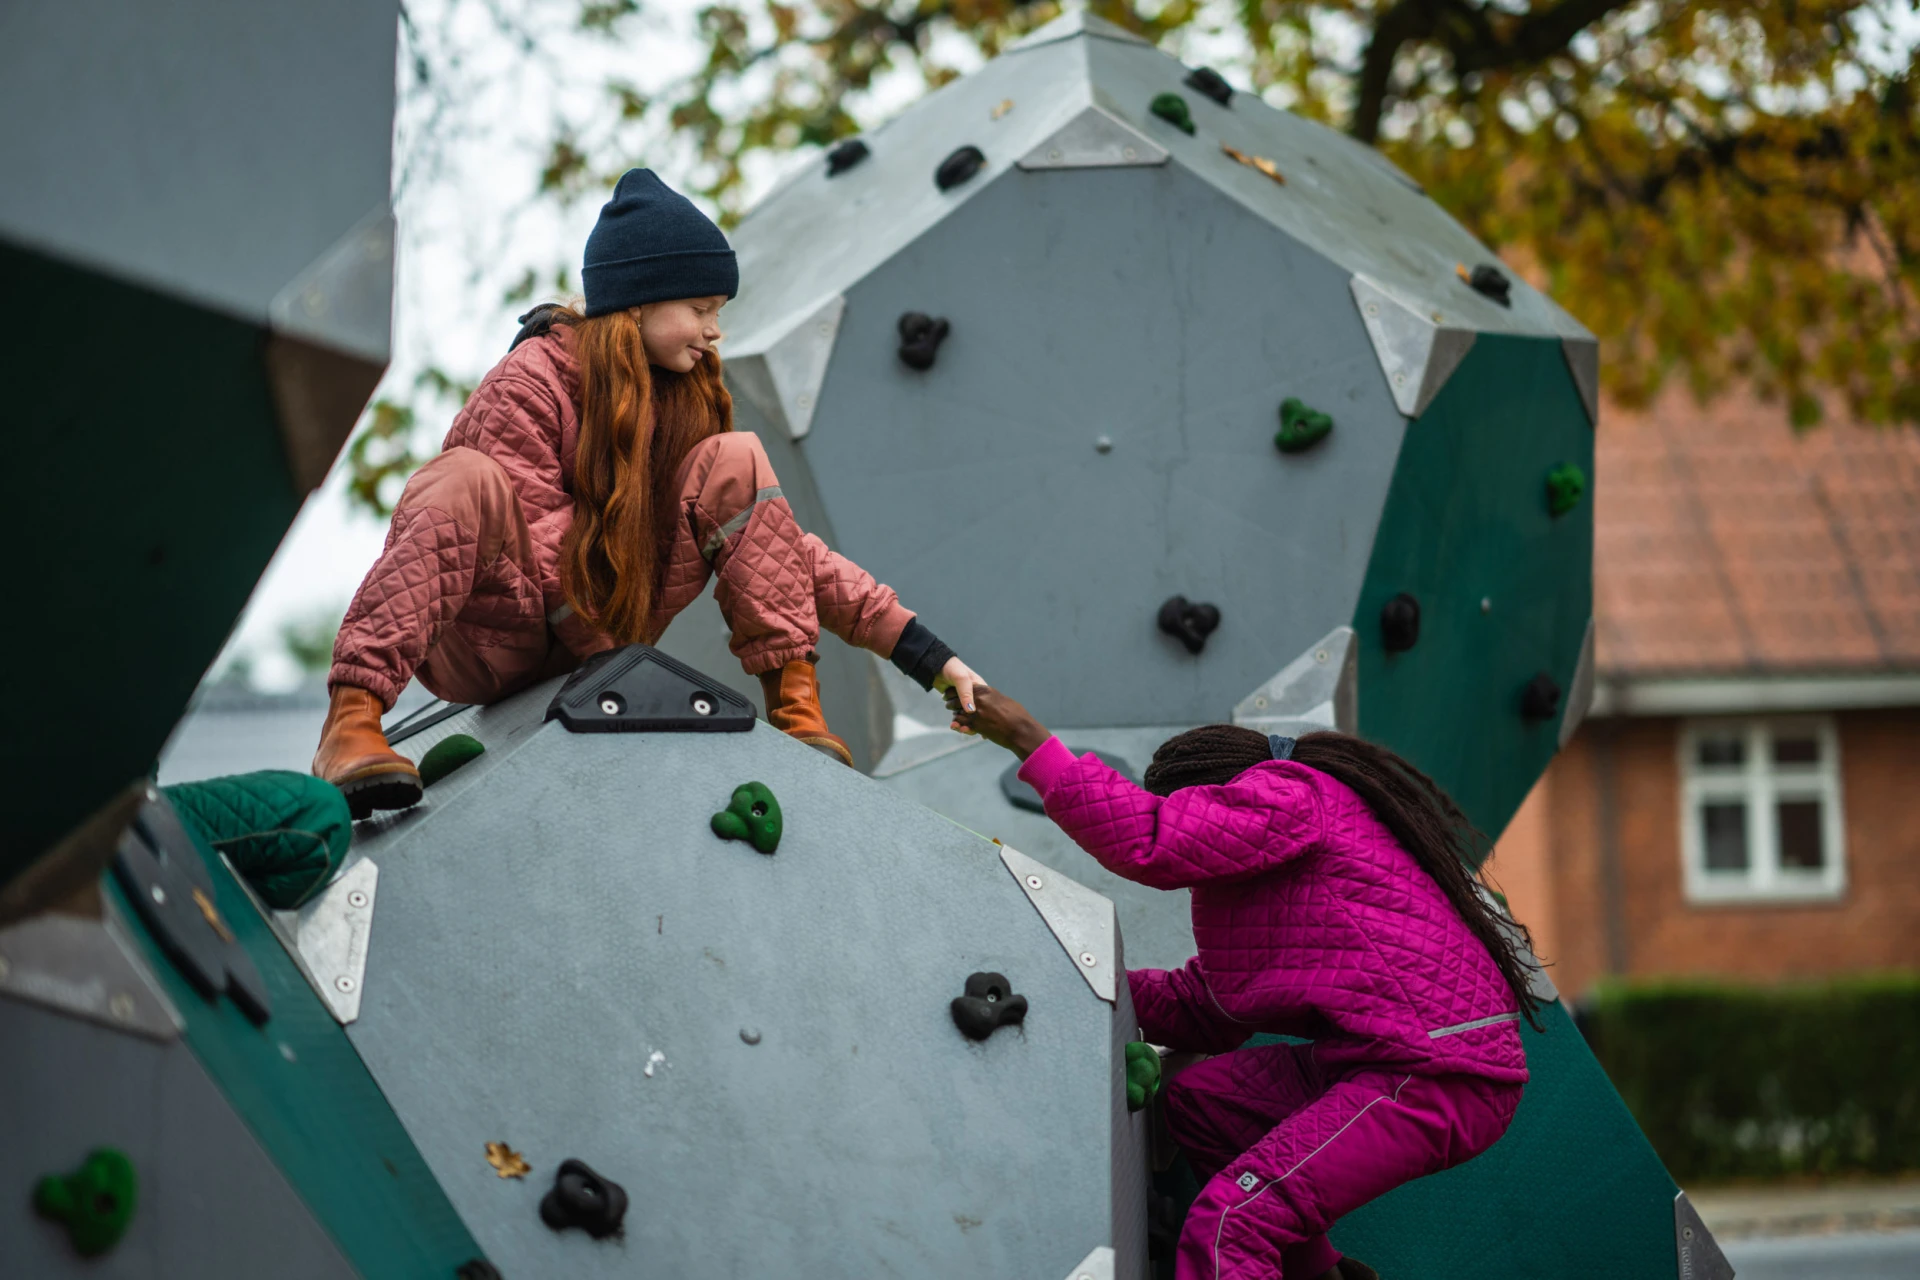 Une fille aide une autre fille à grimper sur une structure d'escalade dans une aire de jeux.